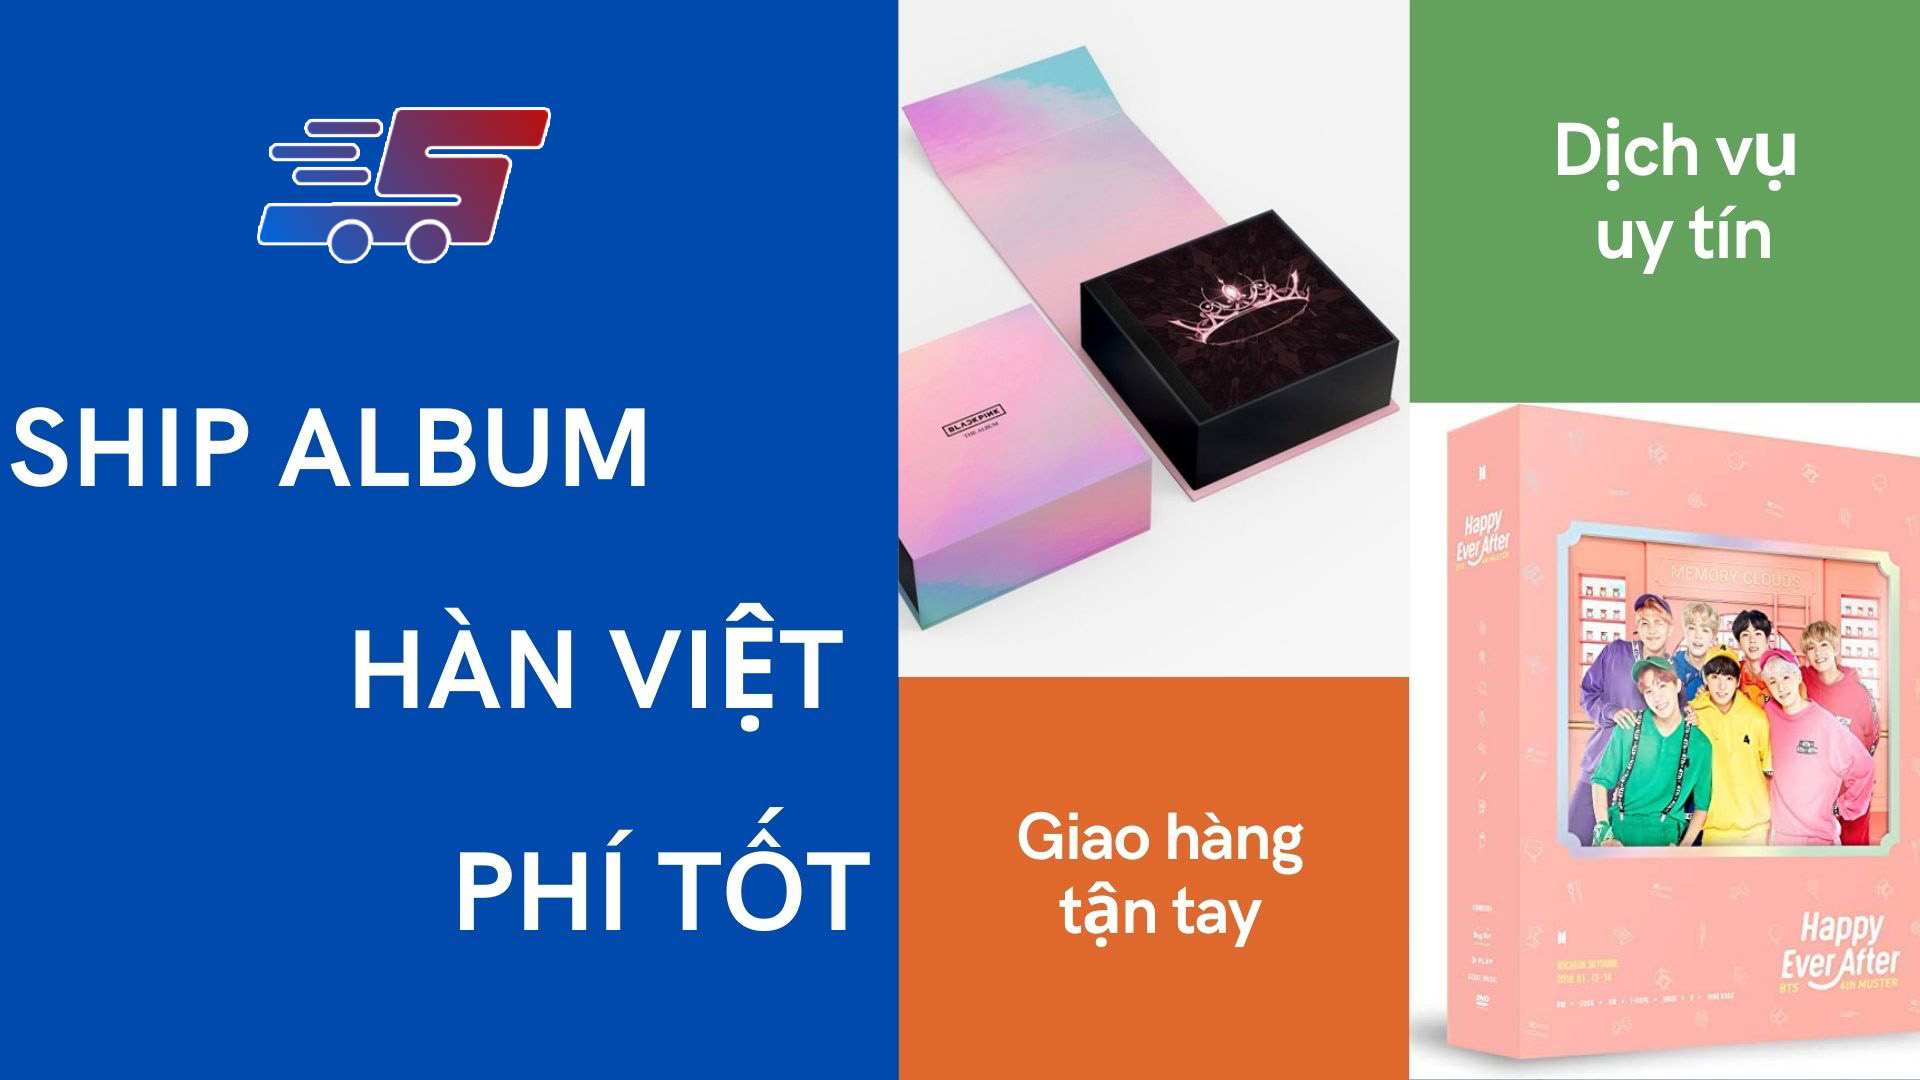 Phí ship album Hàn Việt tại Shipquocte là bao nhiêu?